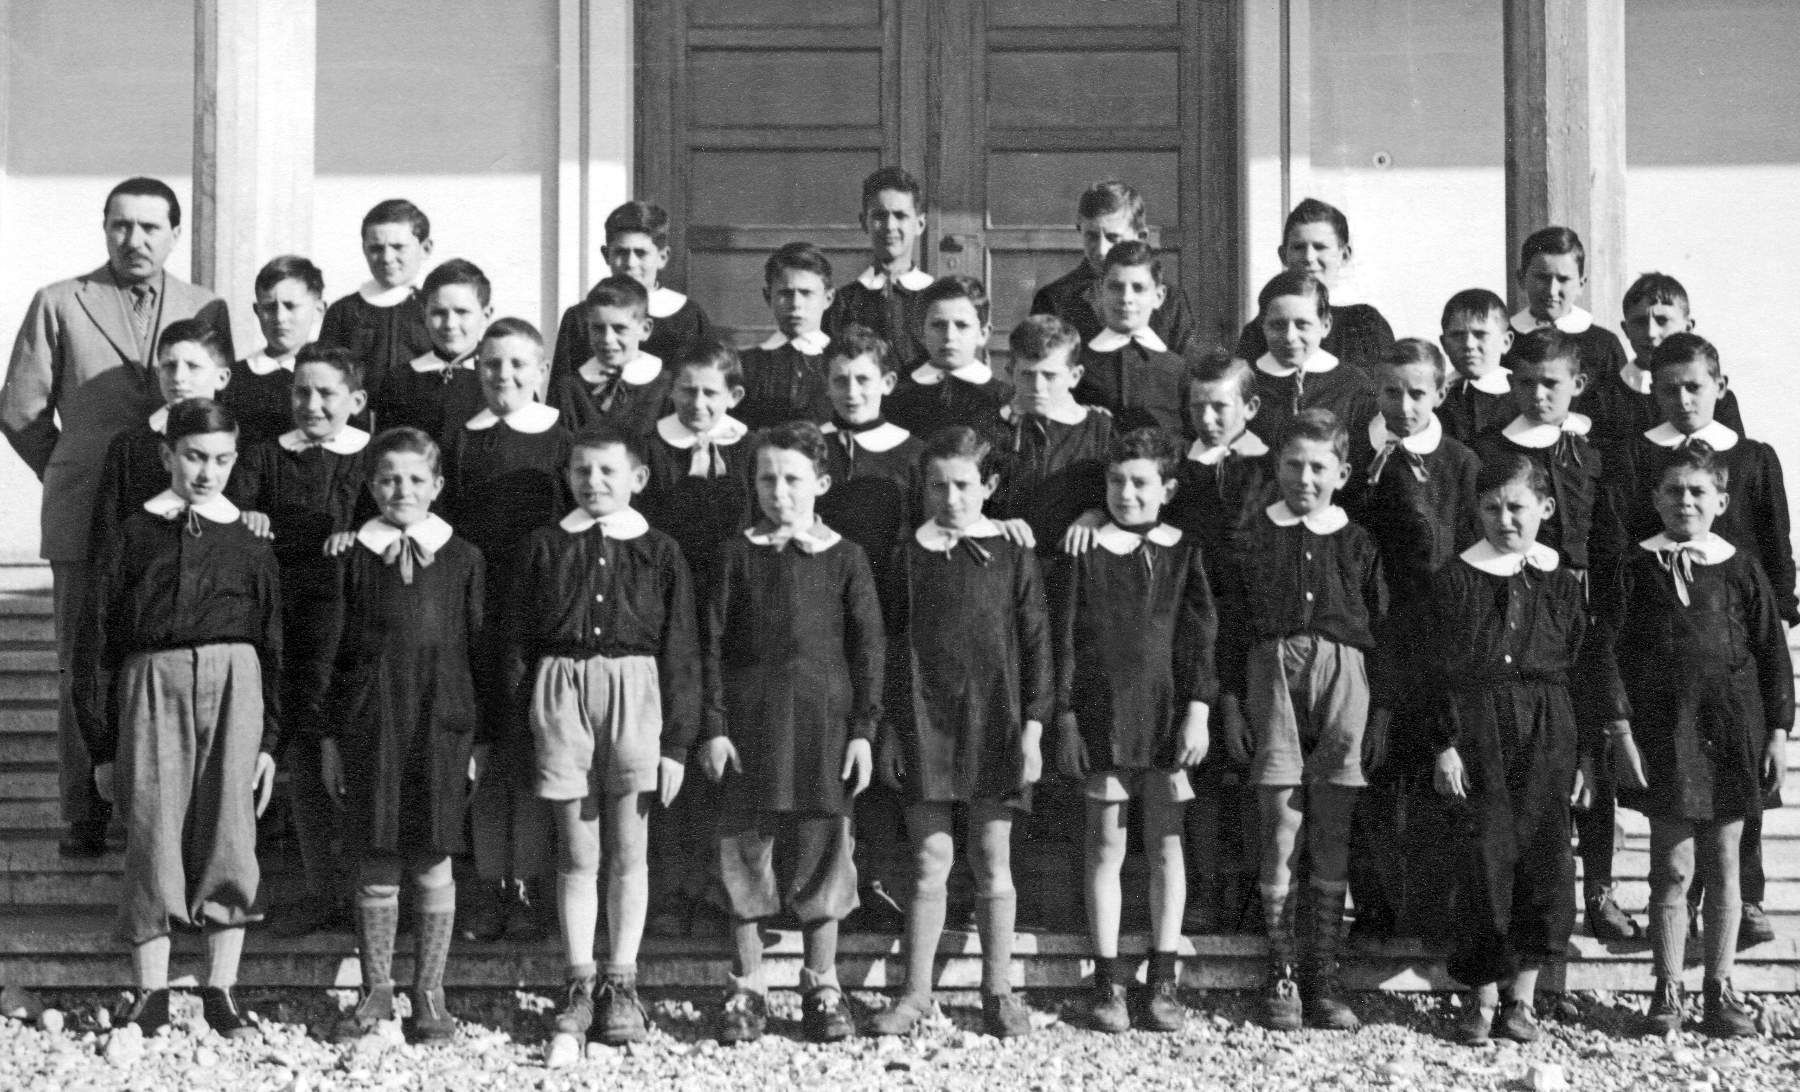 Classe 1941. Maestro Evaristo Gallina anno 1953, quinta elementare, Bonora Marino, Galdino Gallina, Alfredo Gallina, Bandiera Giuseppe, Gallina Bruno, Gallina Claudio, Gino Facin (Necchi).